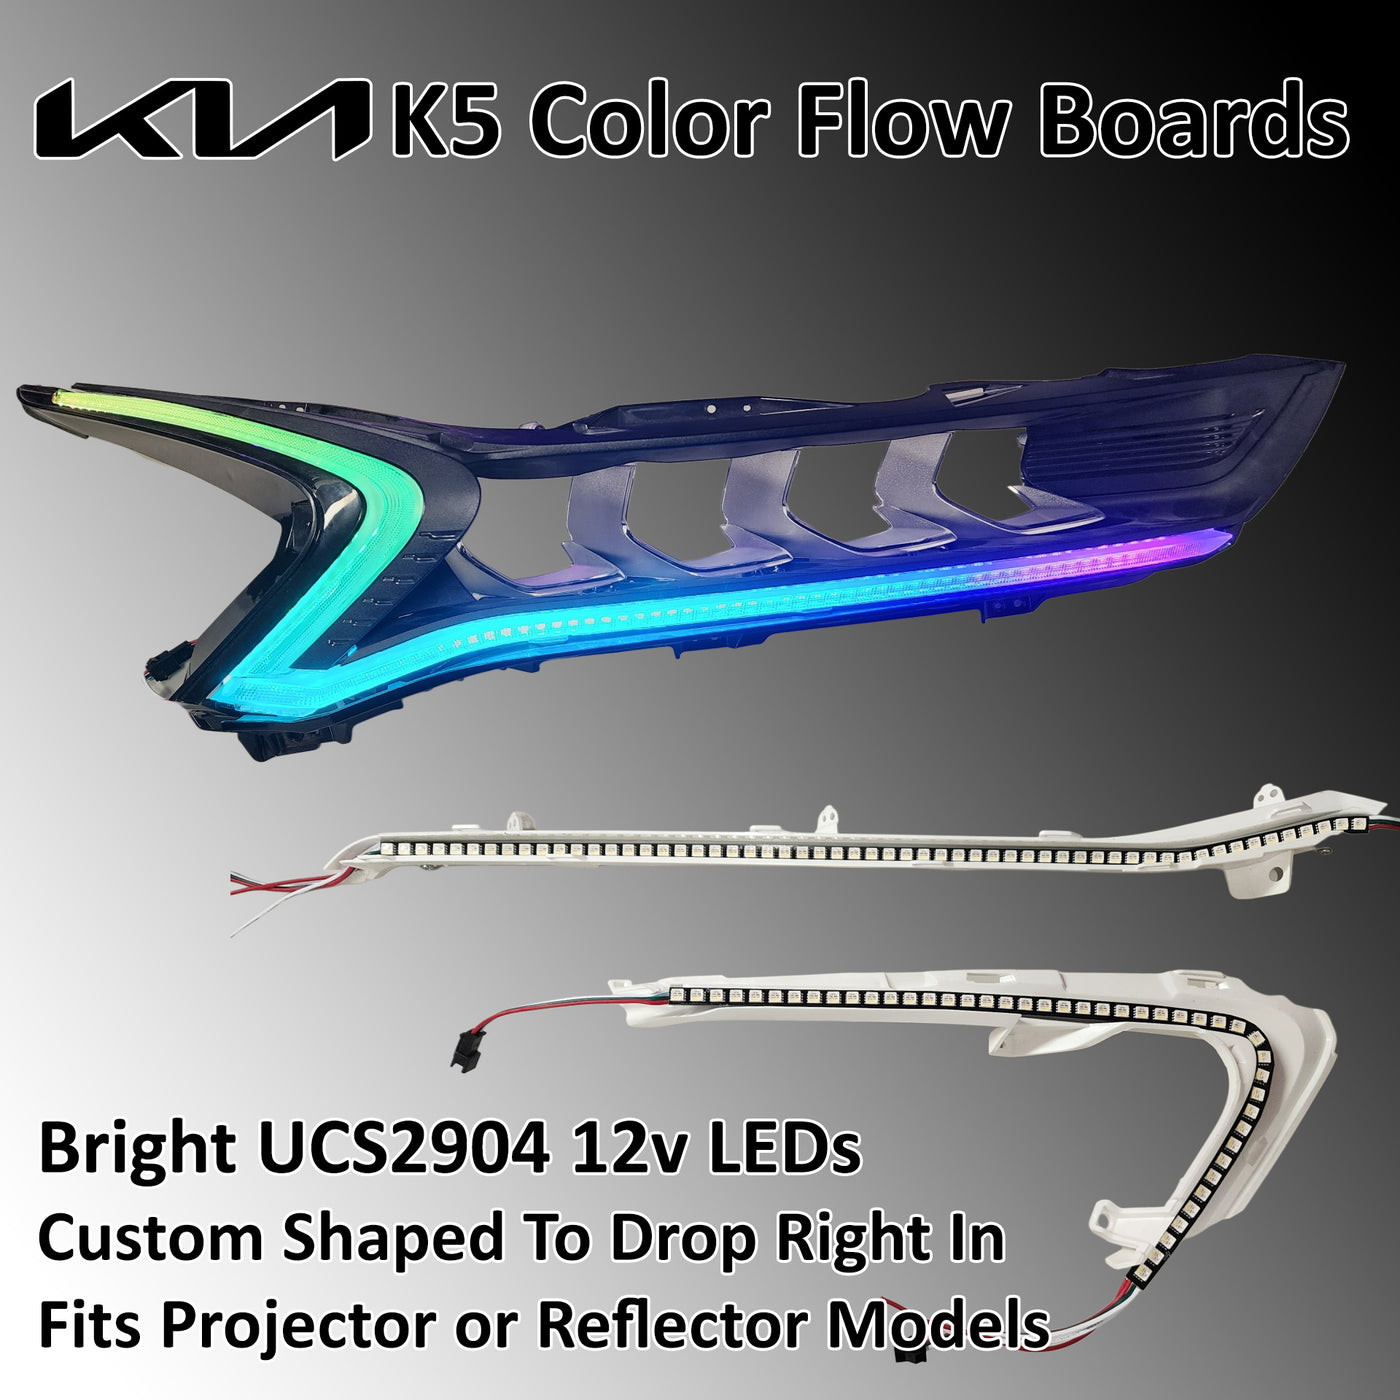 KIA K5 Color Flow Boards - UCS2904